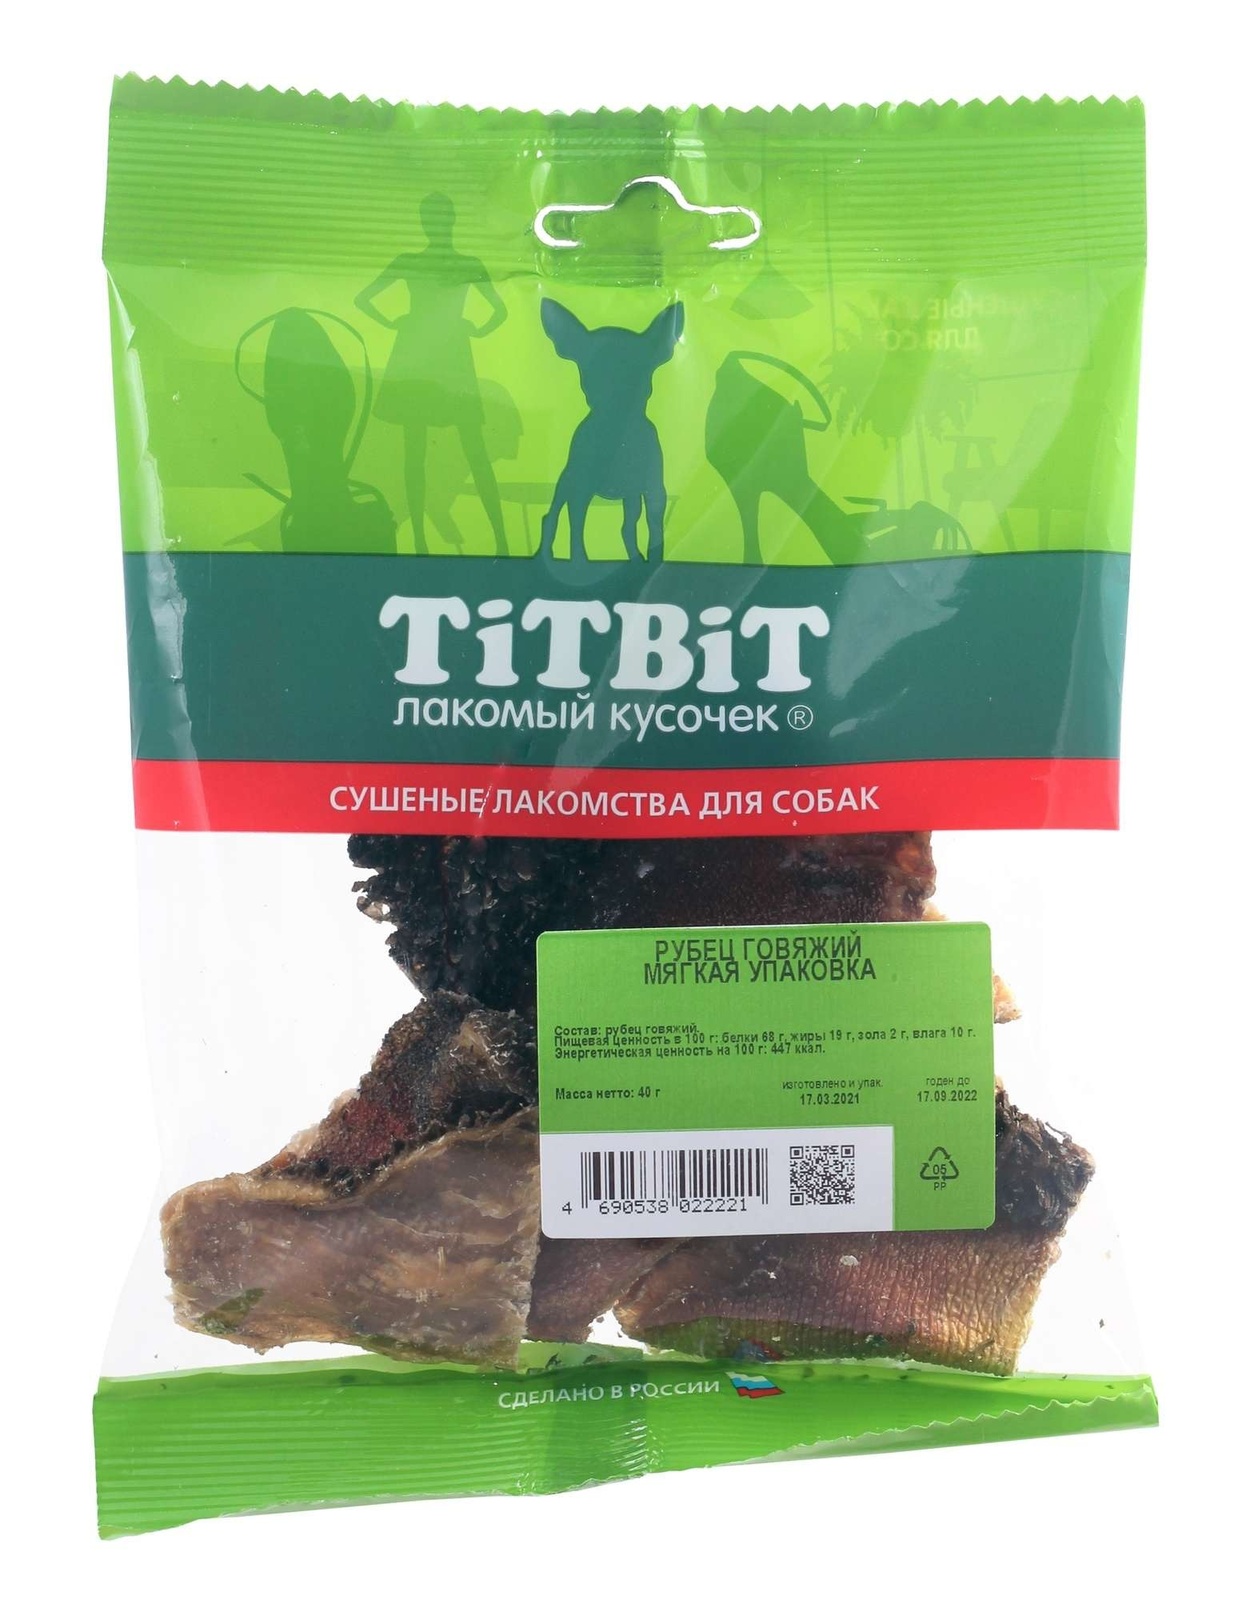 TiTBiT TiTBiT рубец говяжий - мягкая упаковка (40 г) titbit шашлычок говяжий для собак мягкая упаковка 130 г